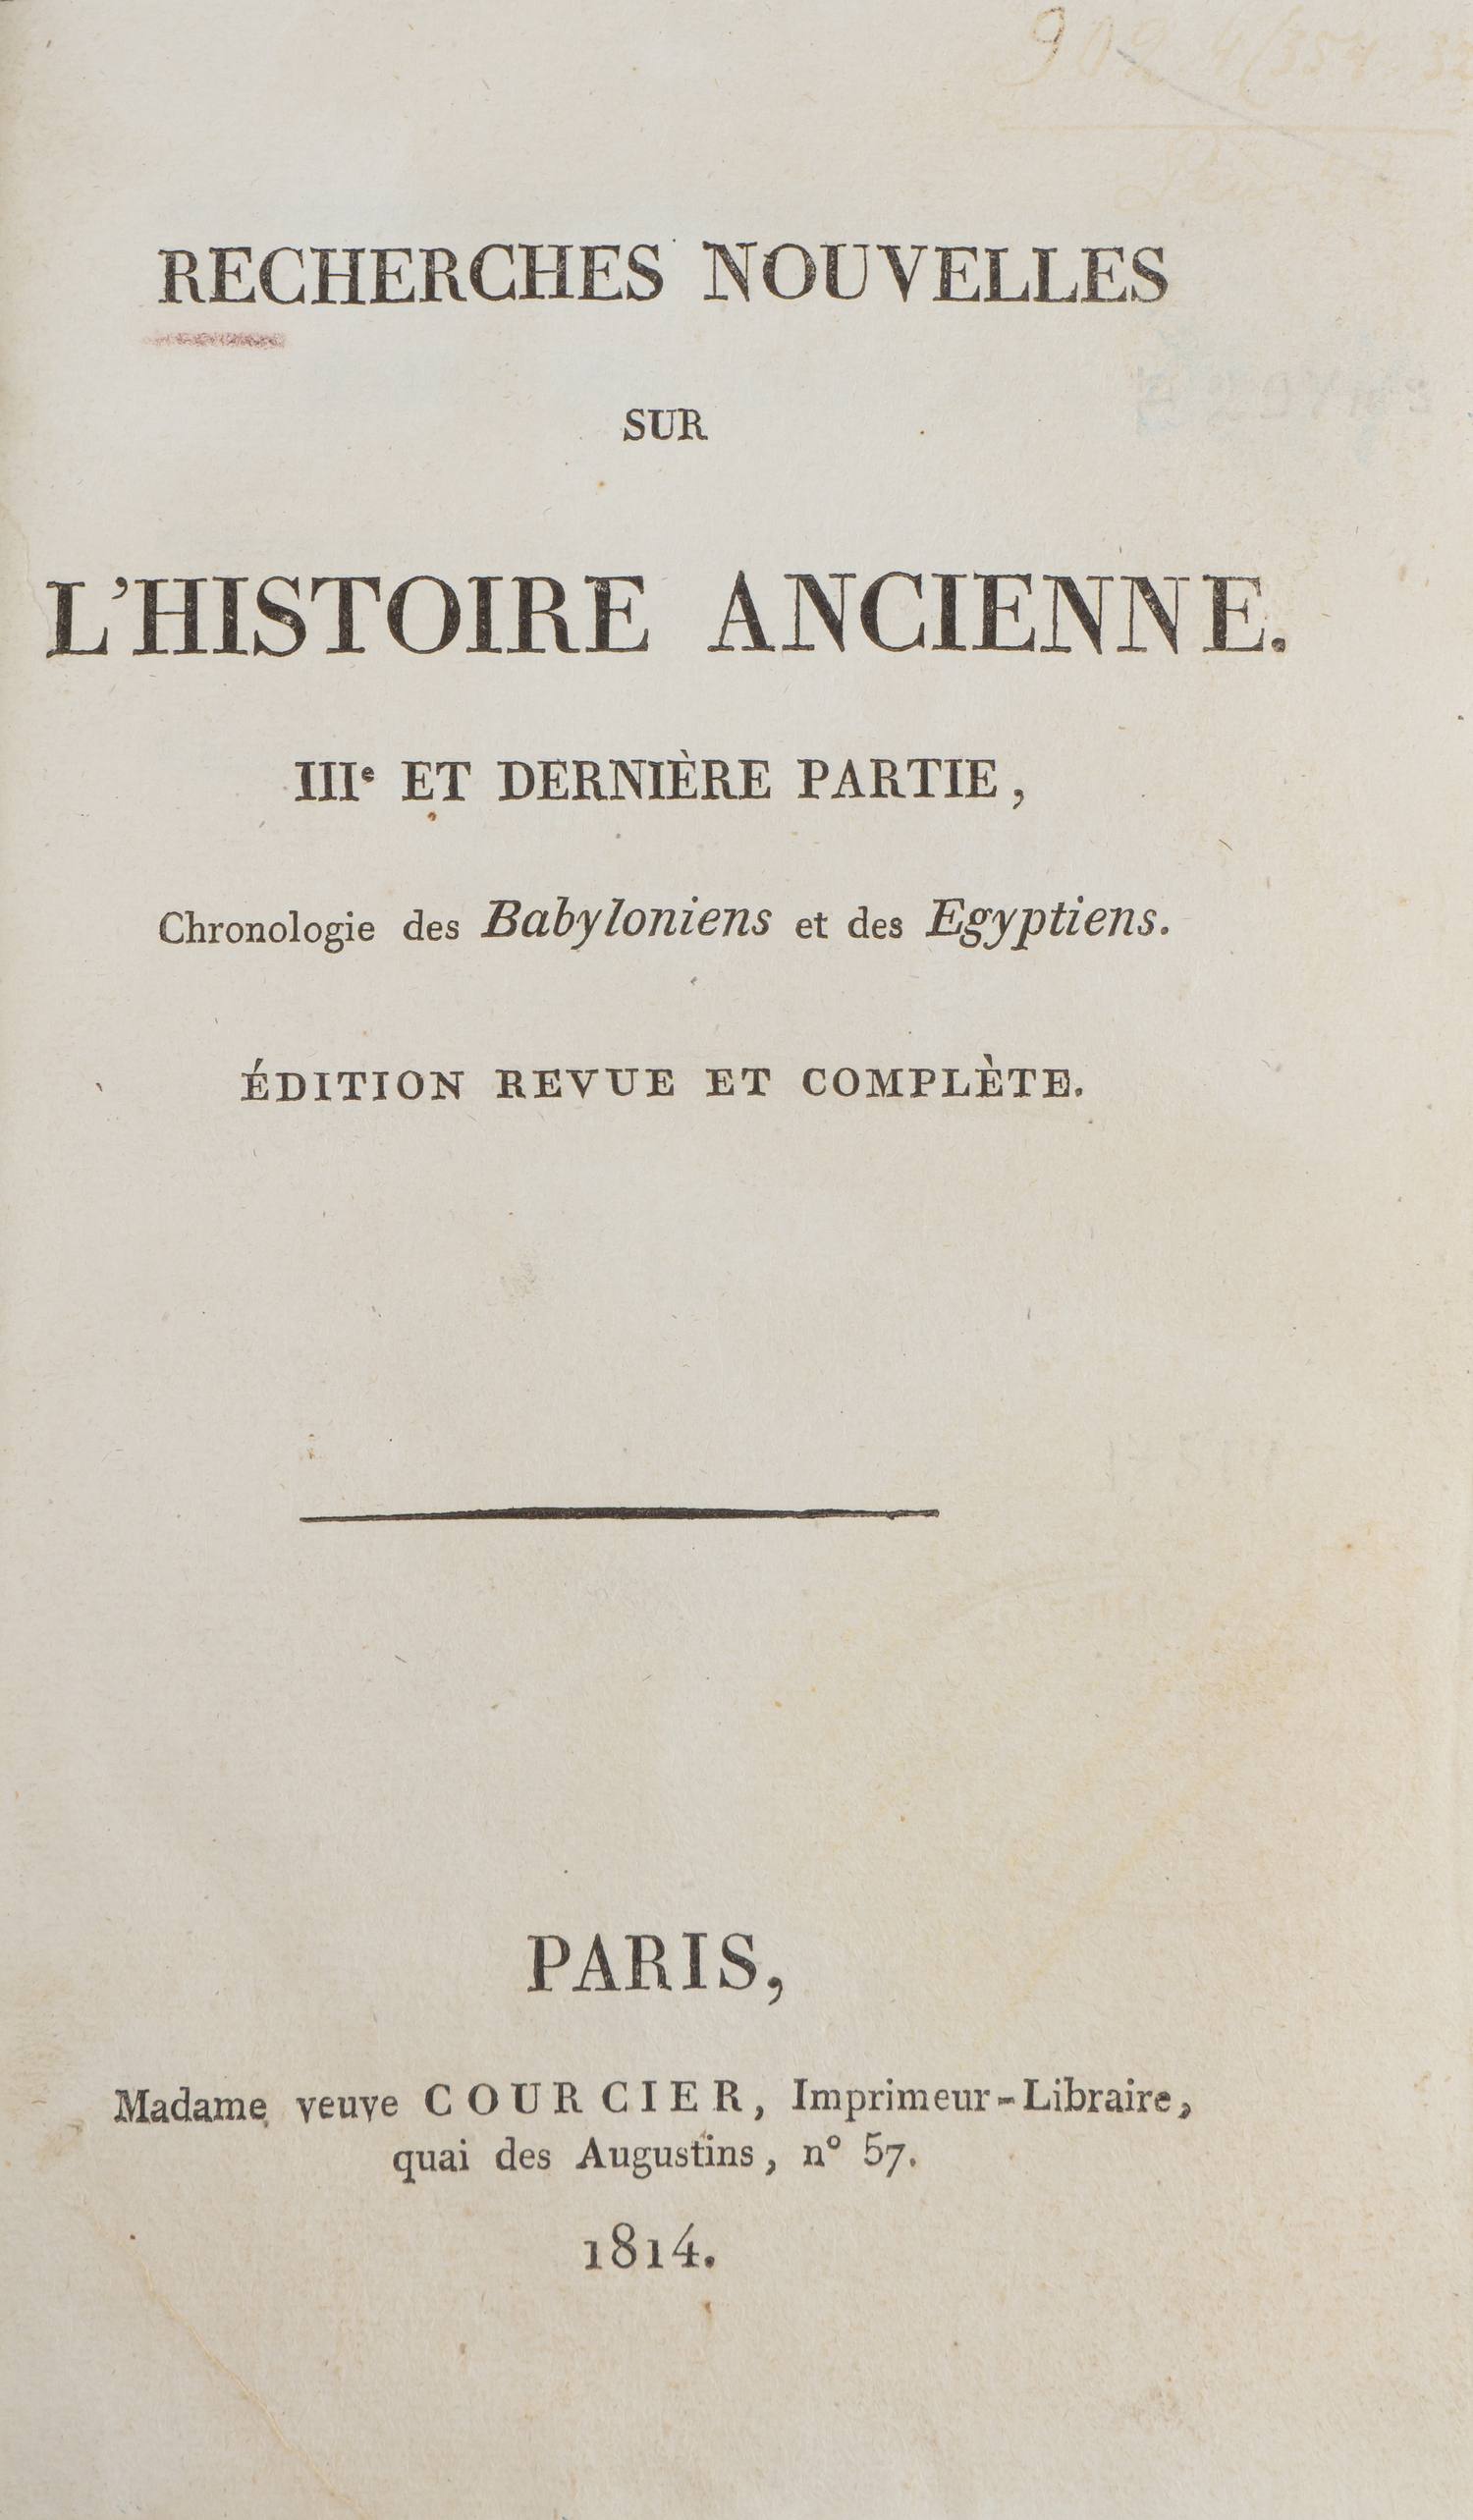 Новейшие исследования в области античной истории (Recherches nouvelles sur l'histoire ancienne) (Париж, 1814).